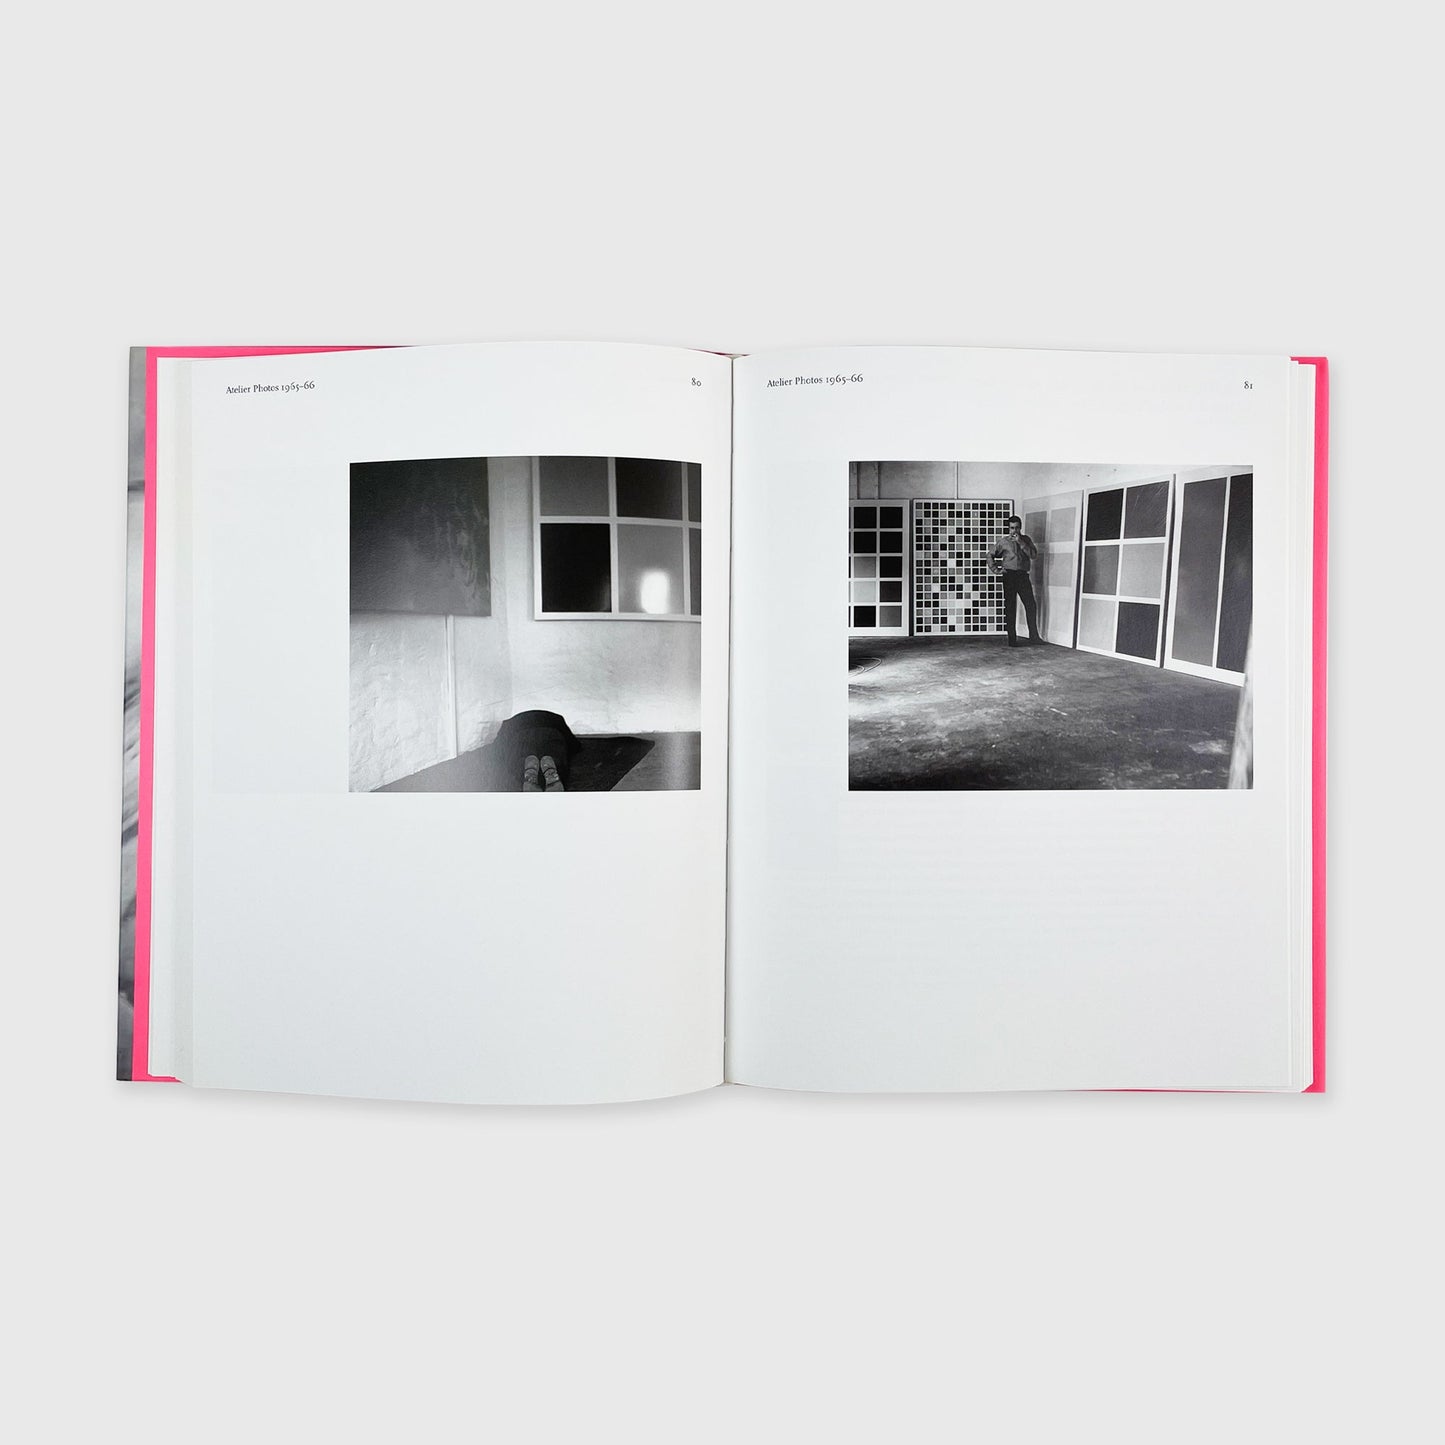 Gerhard Richter: Images of an Era